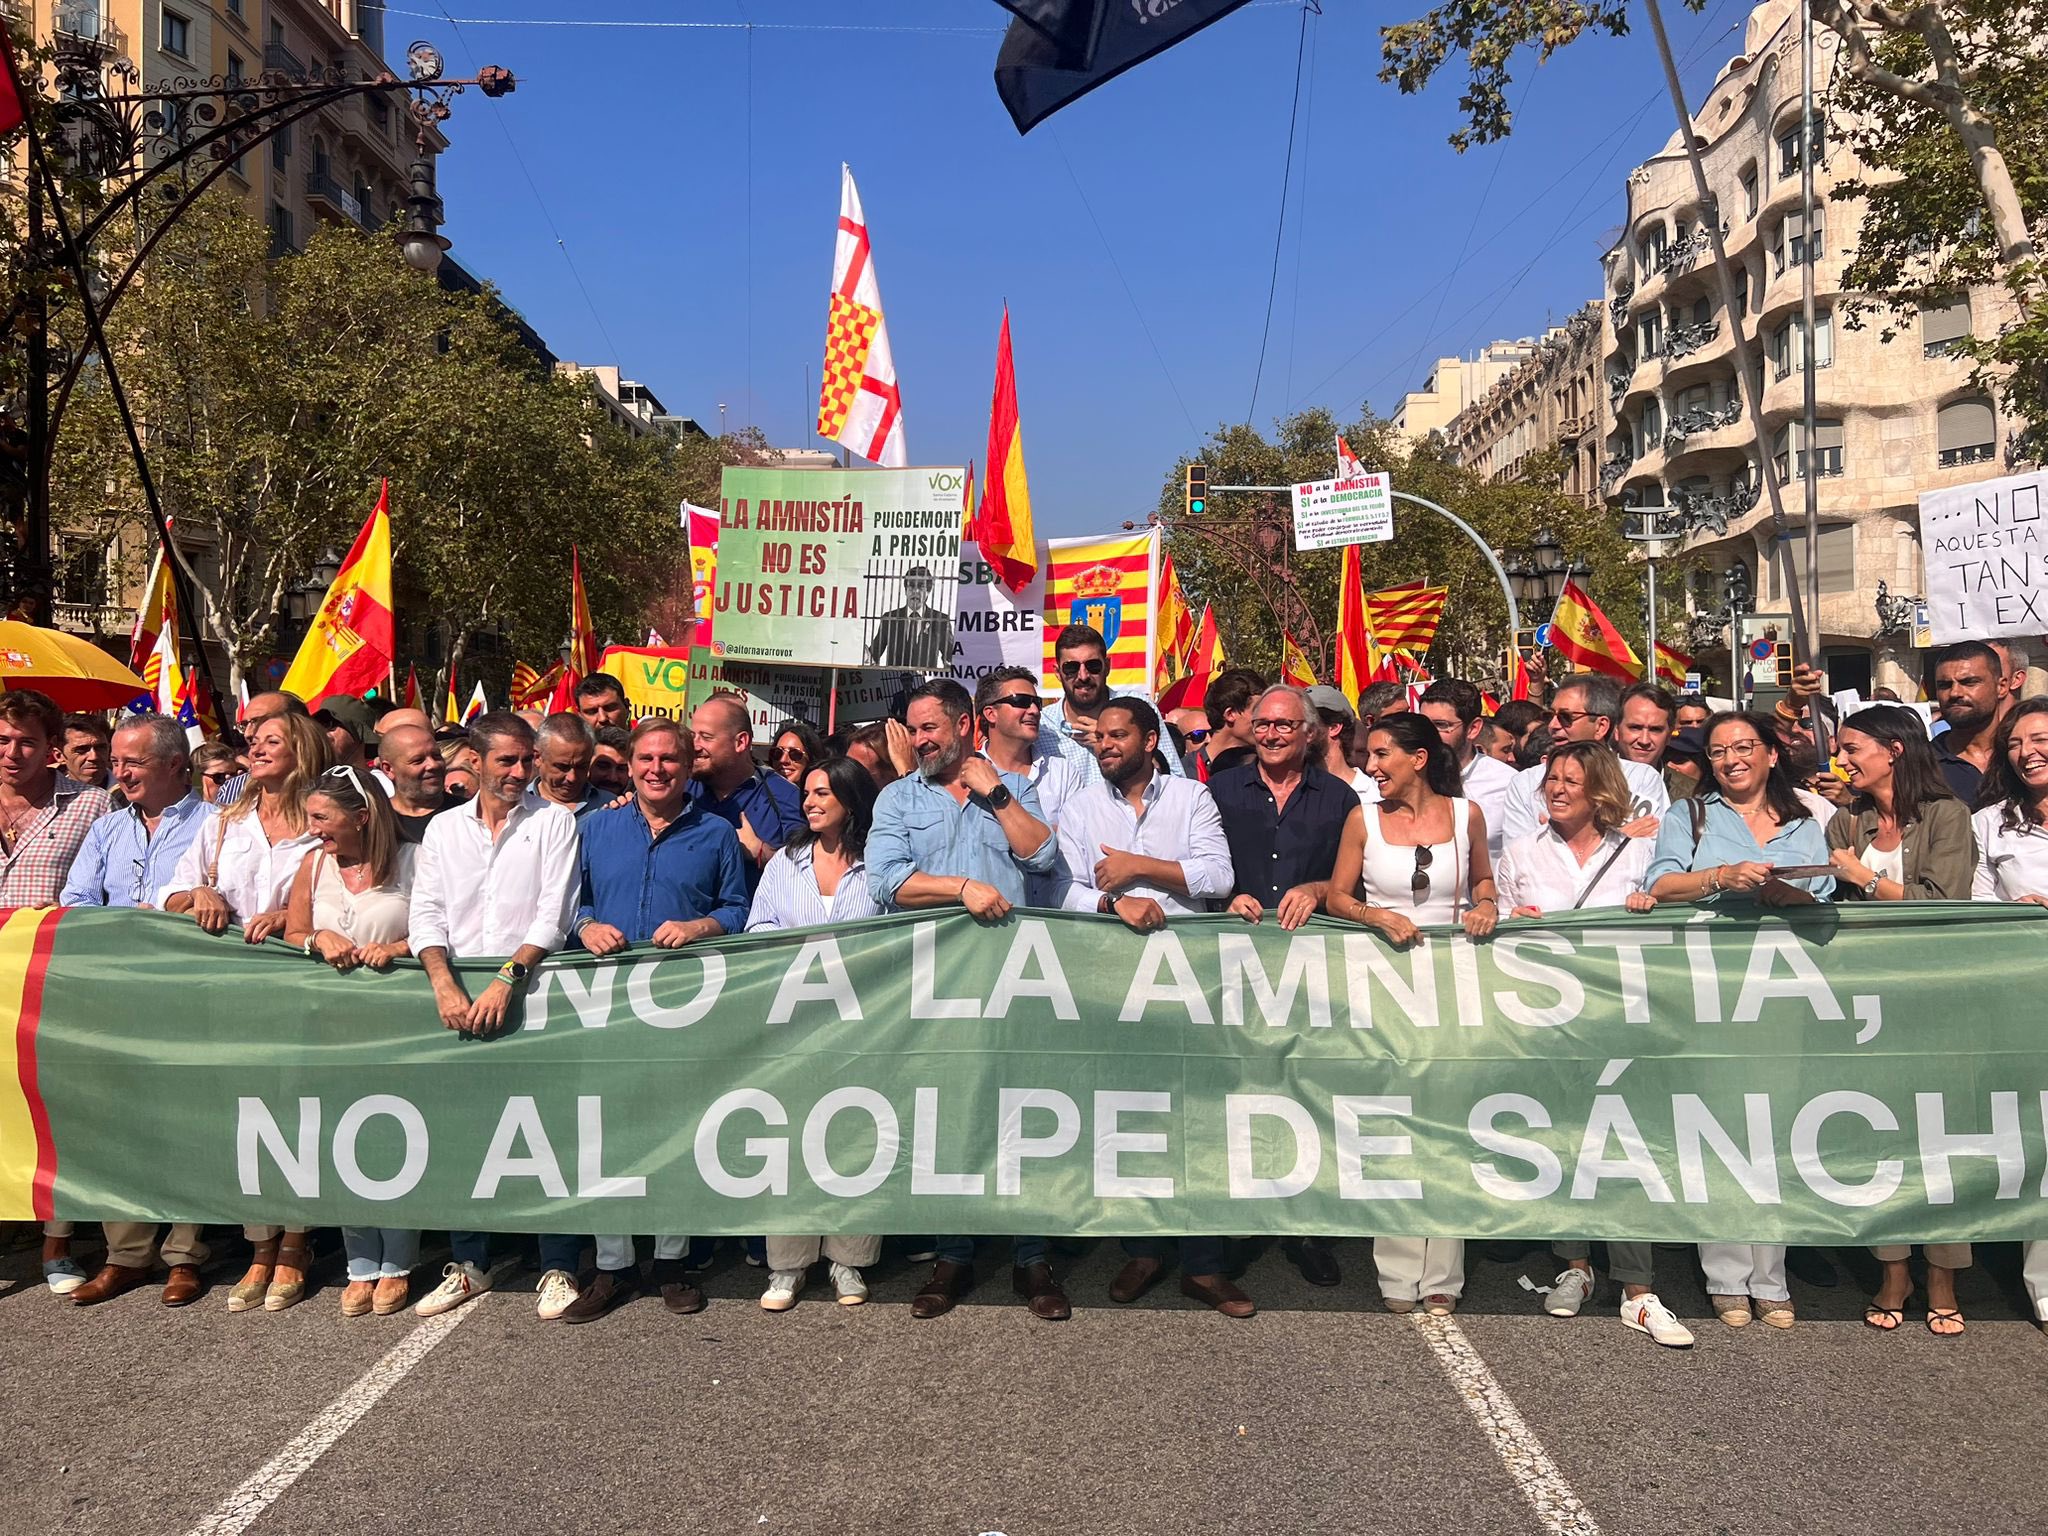 Sociedad Civil Catalana convoca una manifestación contra la amnistía en Barcelona+HD - Página 5 F76TMUoXMAA52WK?format=jpg&name=large